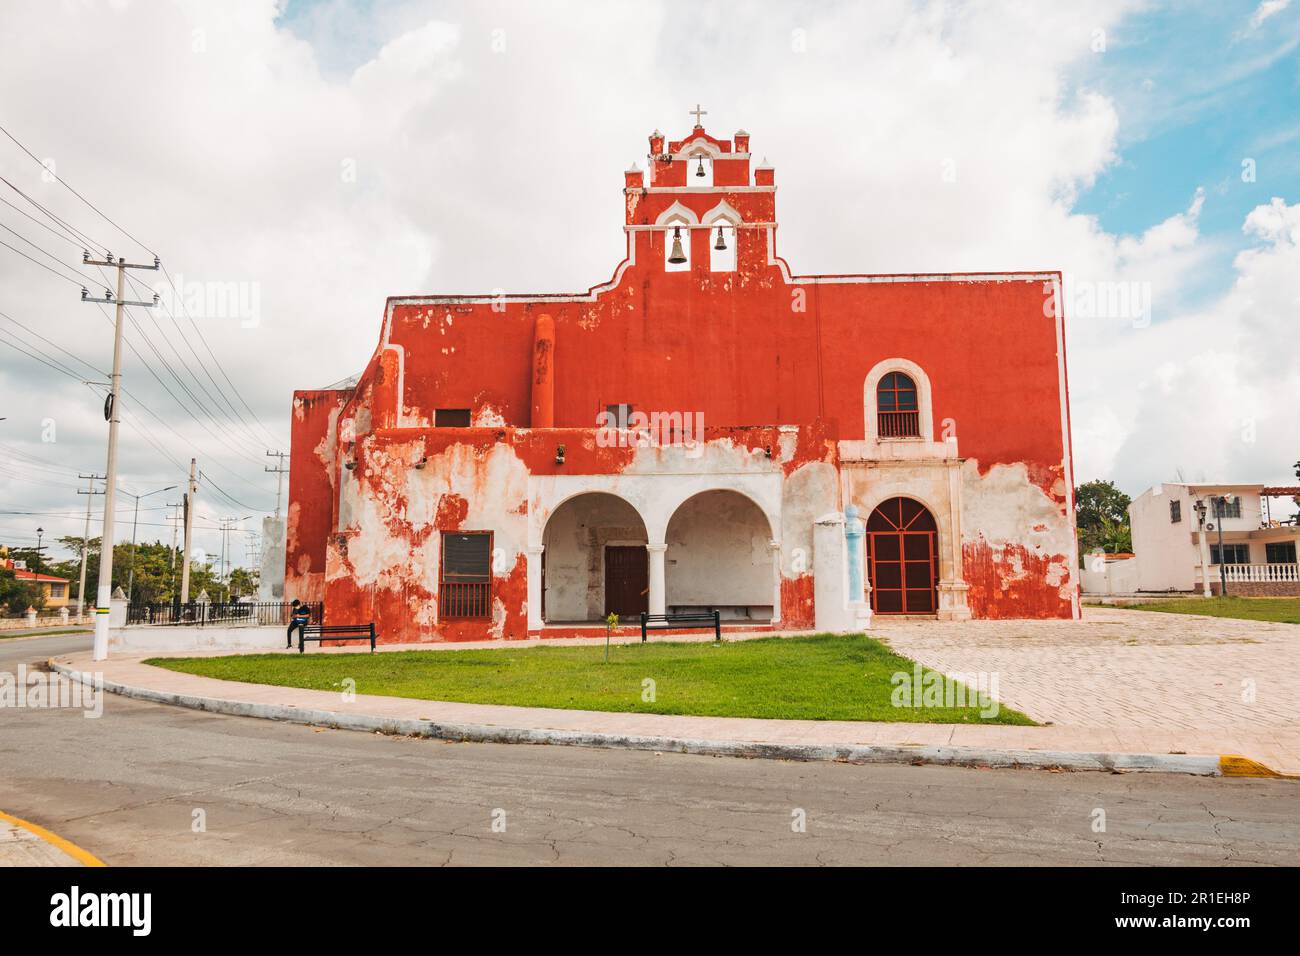 Parroquia San Francisco de Asís, eine Kirche, die 1517 in Campeche, Mexiko, erbaut wurde Stockfoto